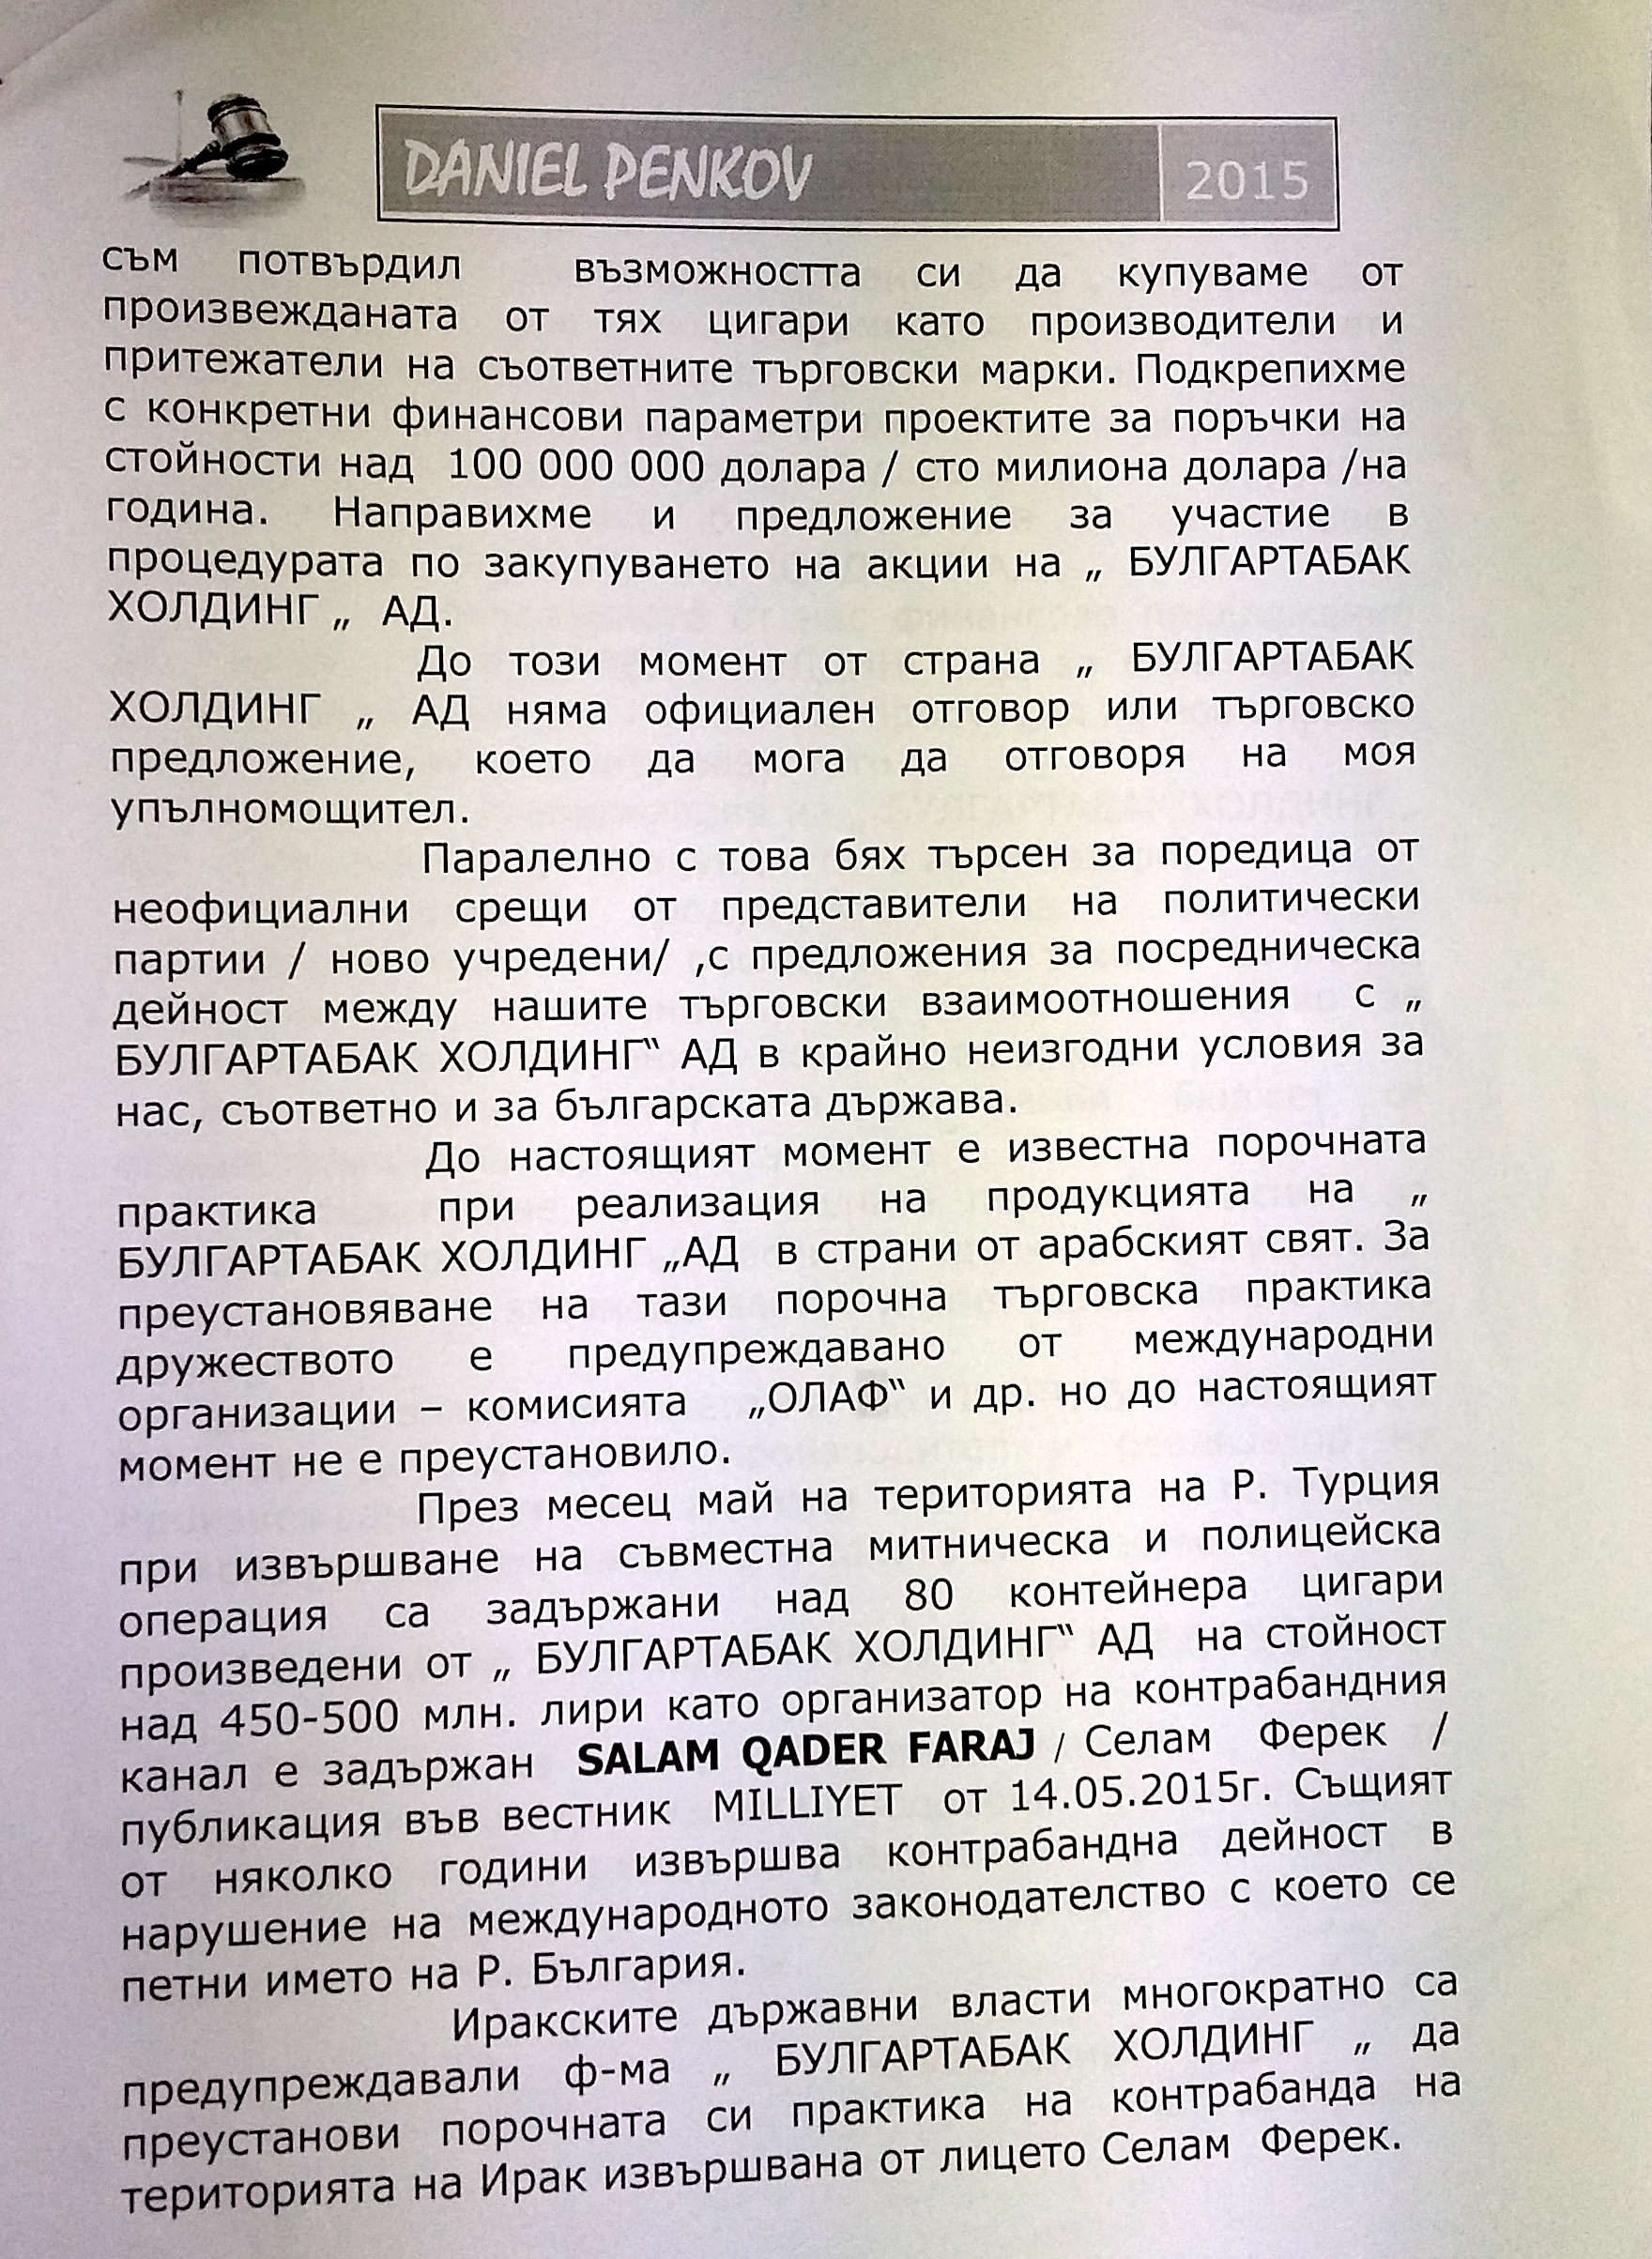 Борисов был уведомлен и знал, что происходит  «Булгартабак» отказался продавать сигареты официальным импортерам в Азии и Африке